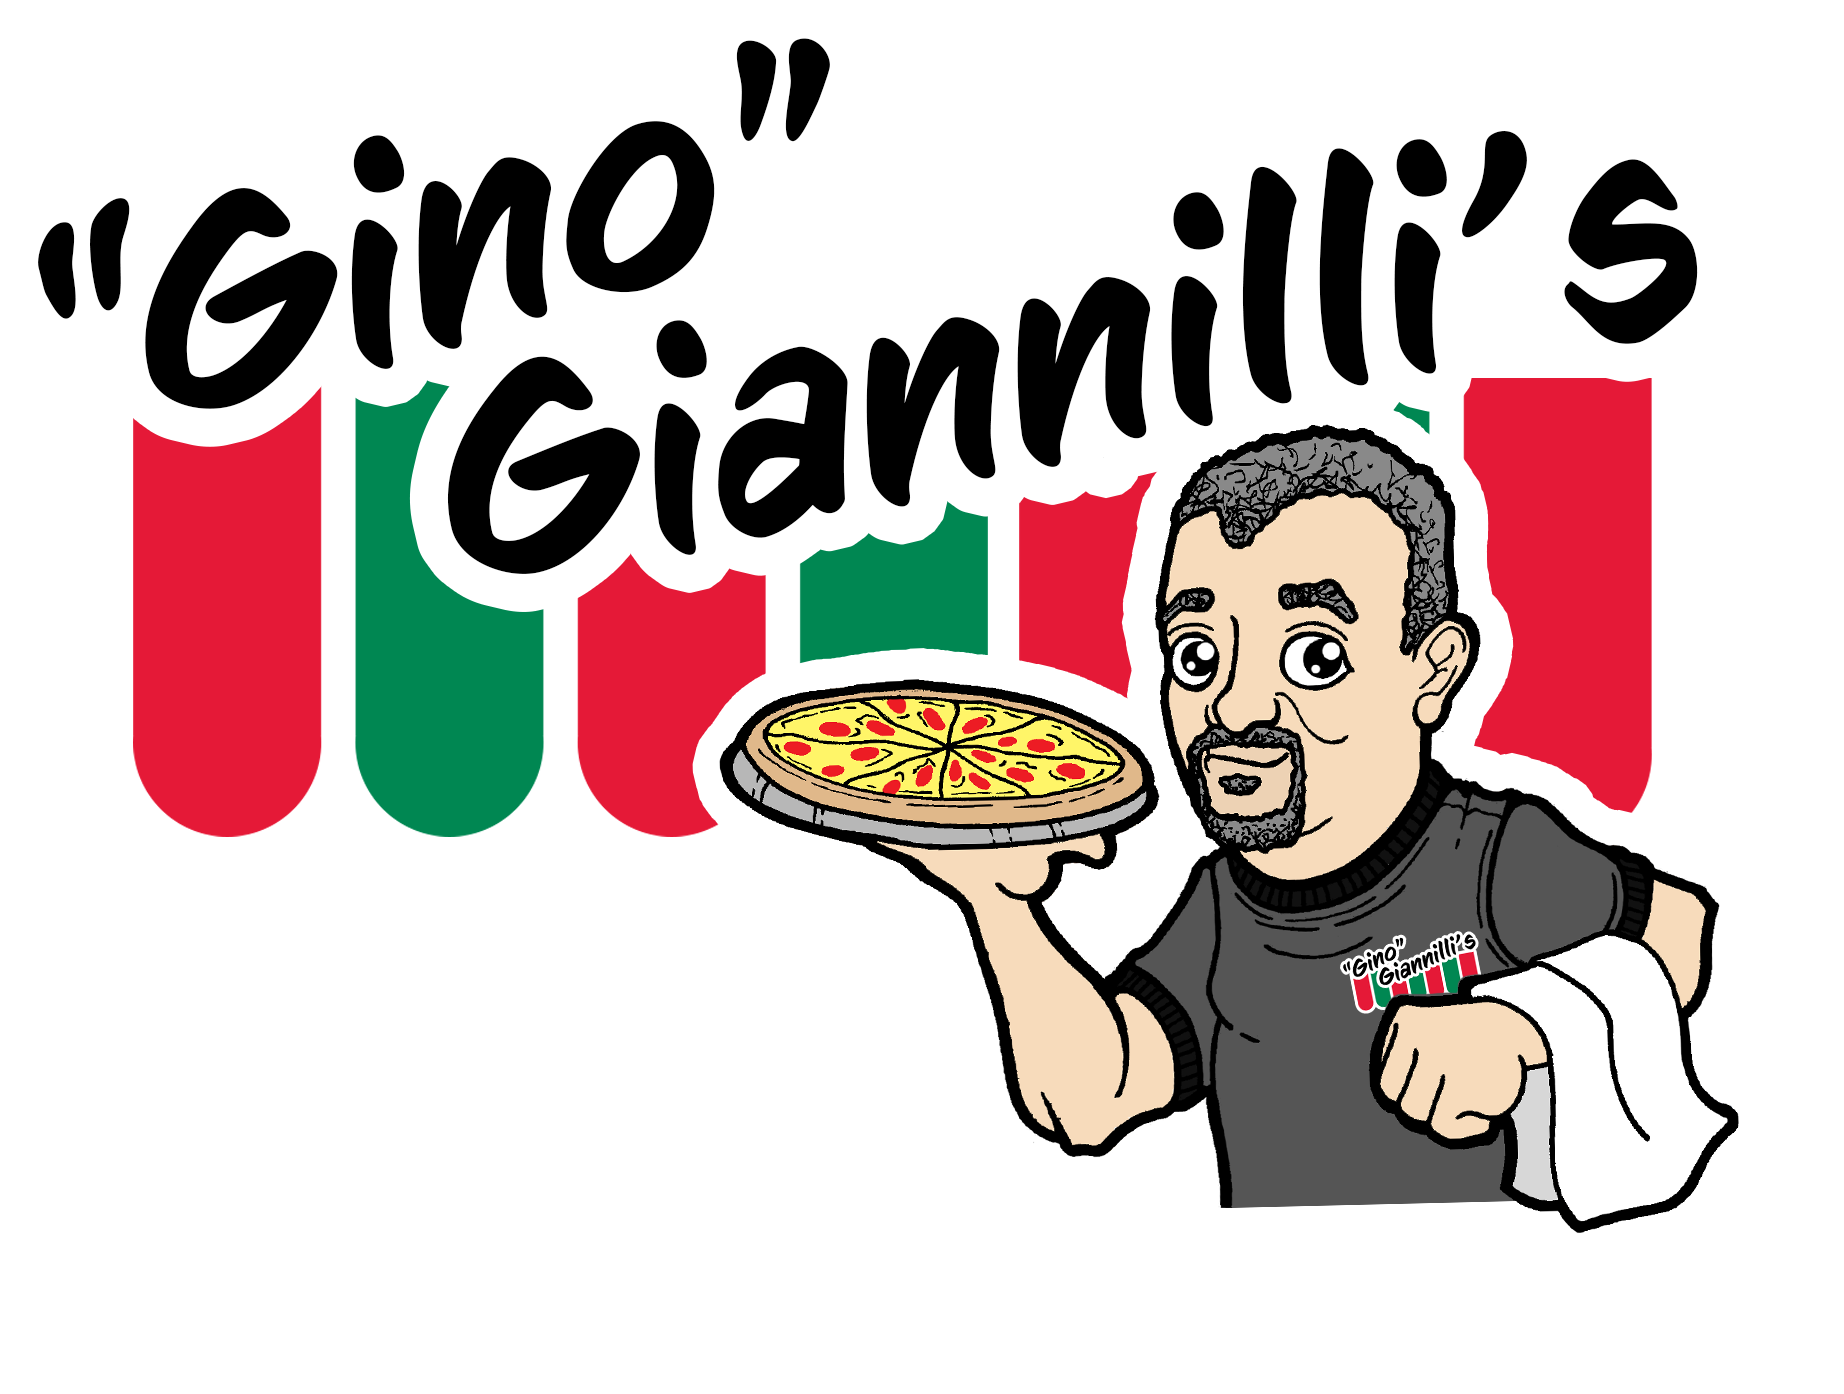 Gino Gianilli's Home